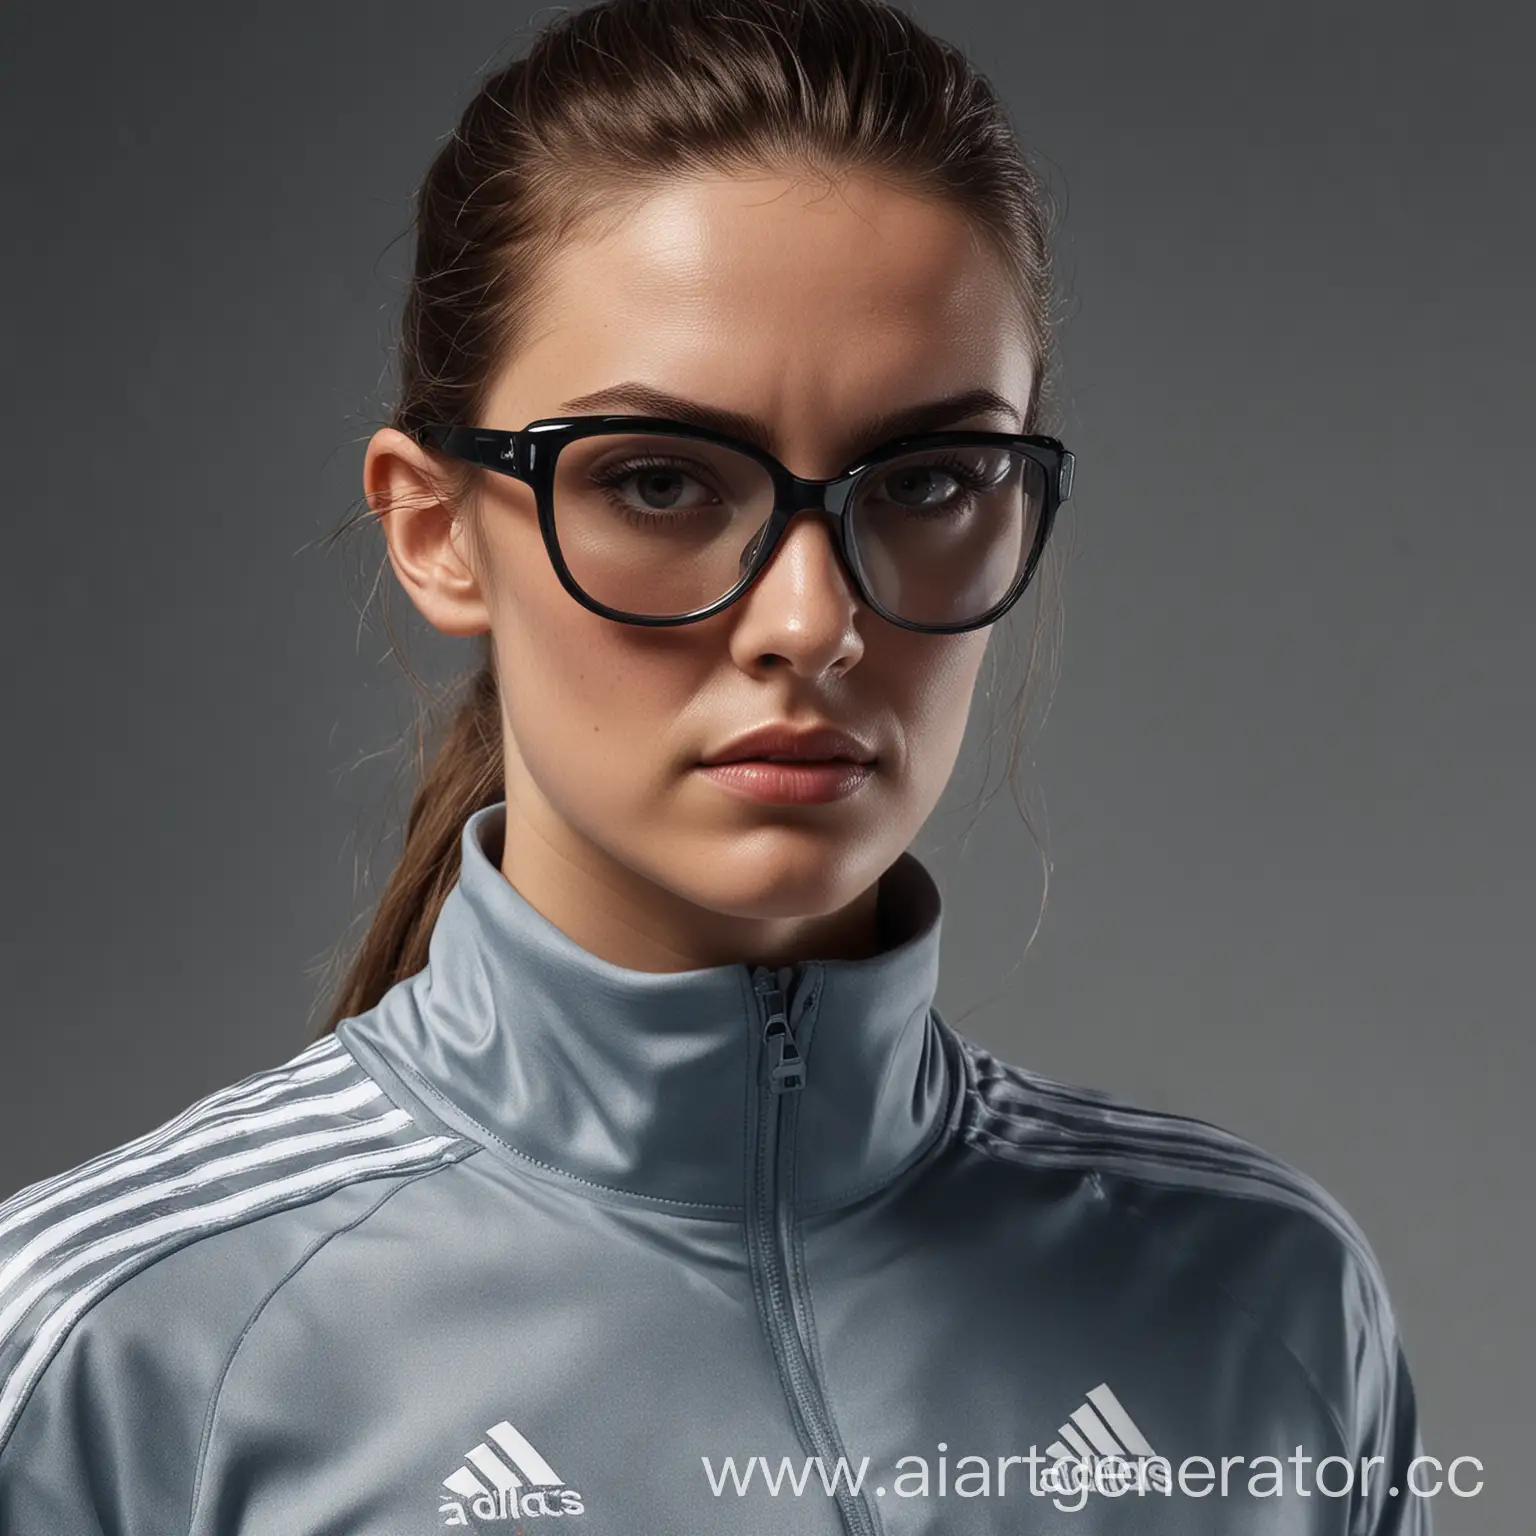 фотография, фотореализм женщина в спортивном костюме адидас и очках для зрения